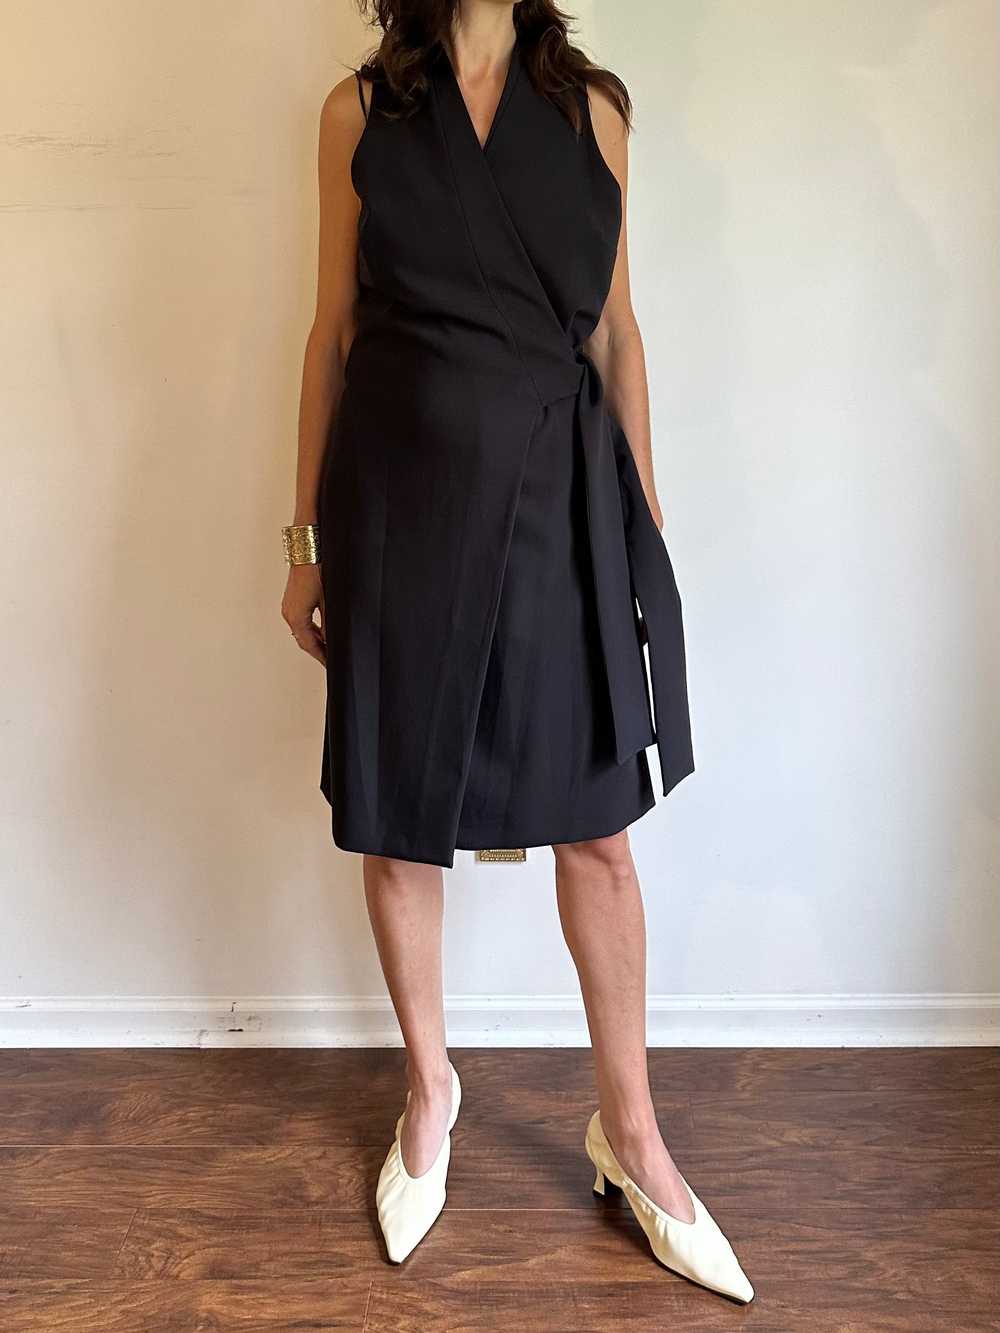 Donna Karen Black Wrap Halter Dress - image 4